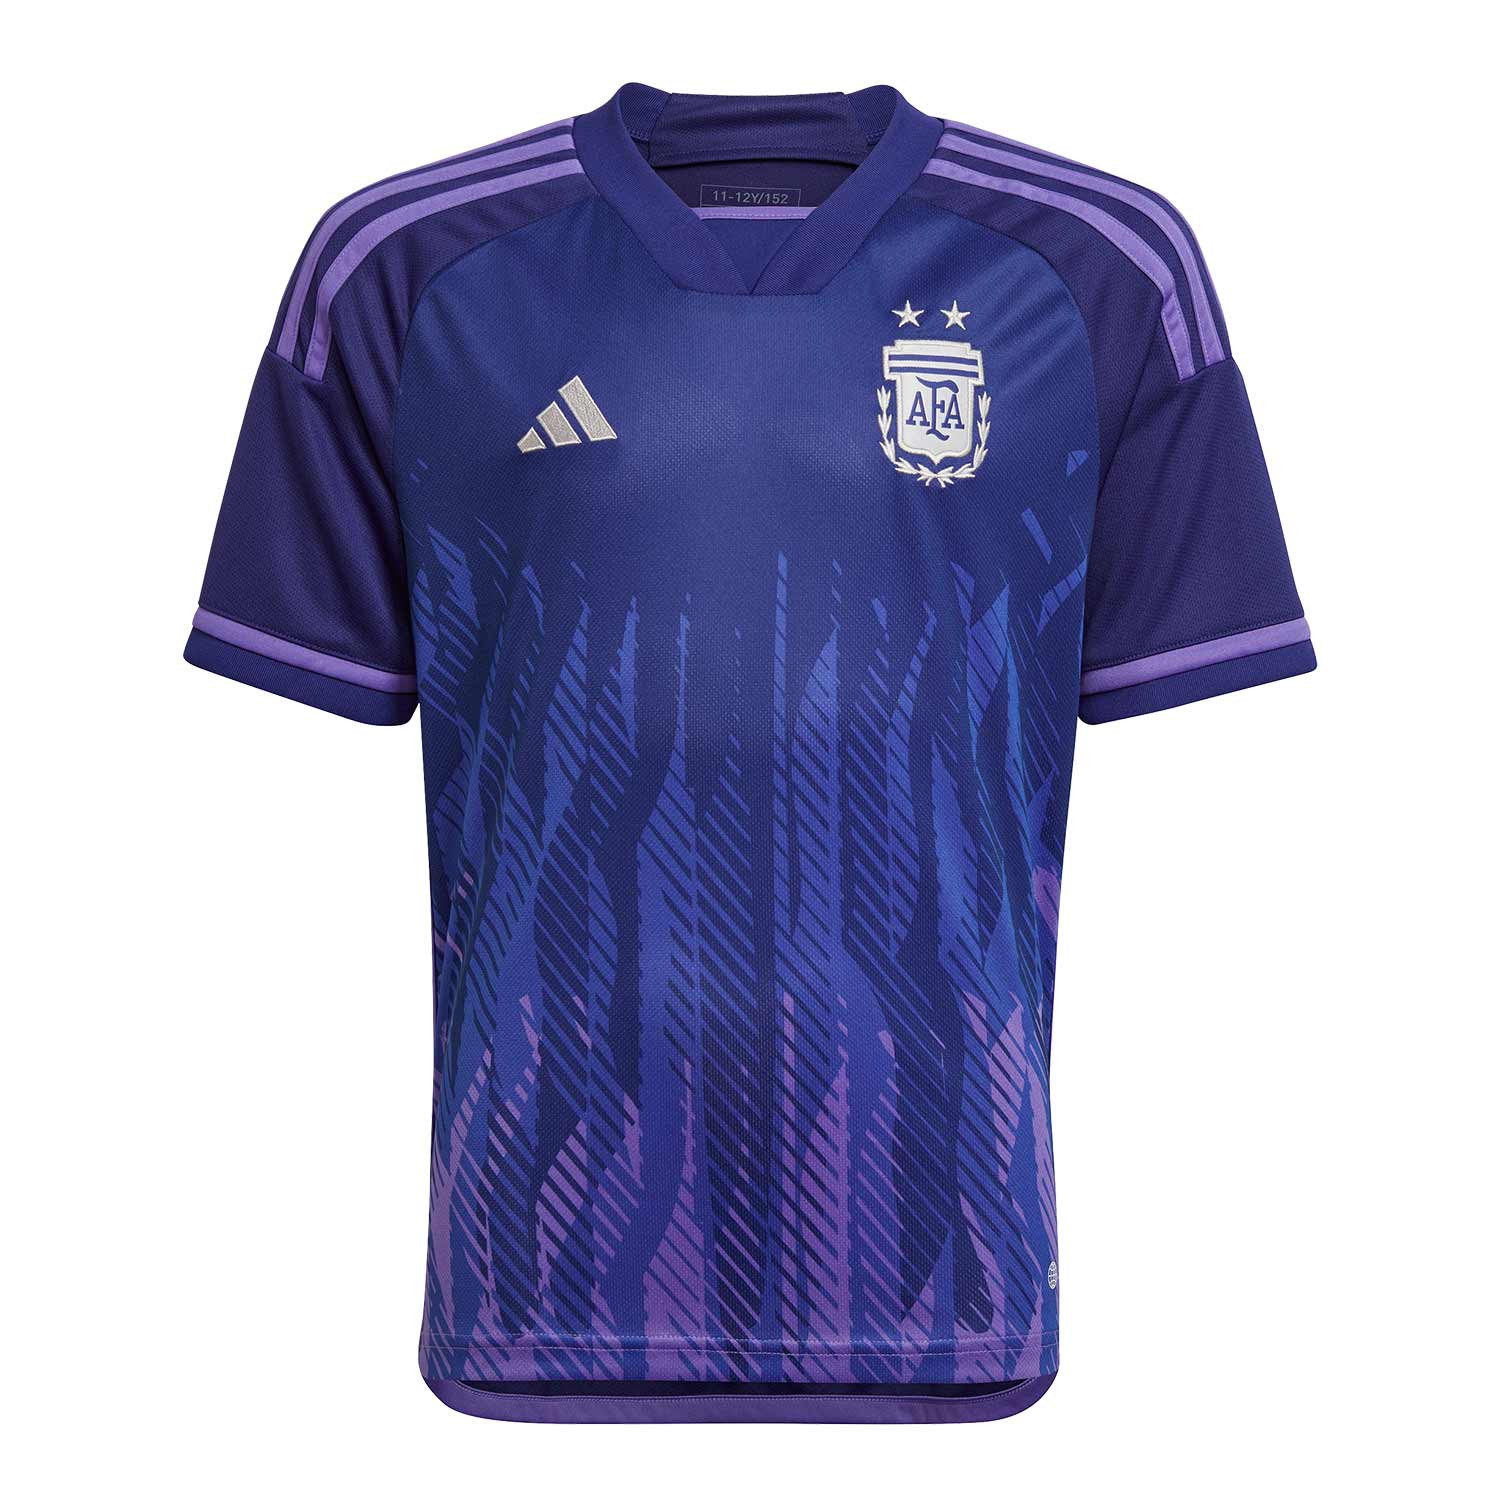 argentina soccer jersey niñas